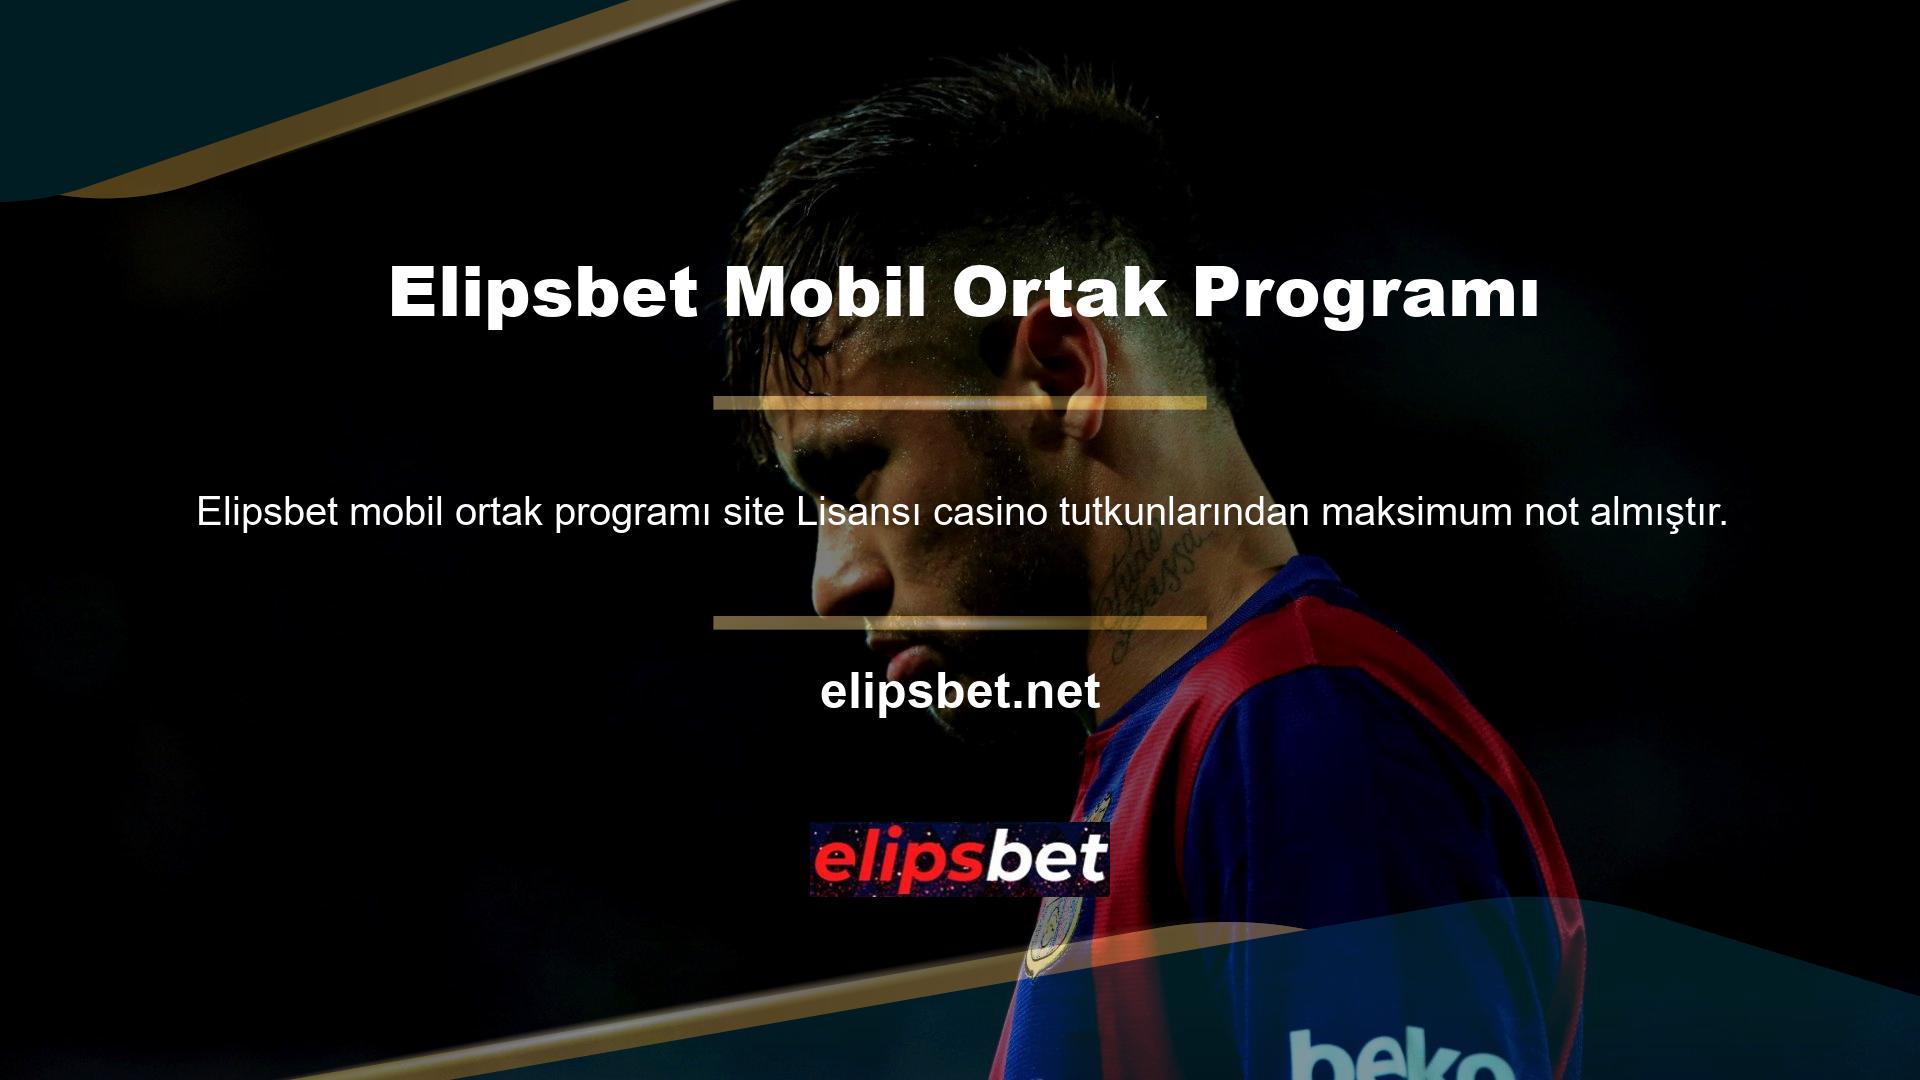 Elipsbet mobil ortaklık programı, bir casino web sitesi için güvenin en önemli konu olduğu felsefesiyle kullanıcılarına her zaman bu güveni sağlamıştır